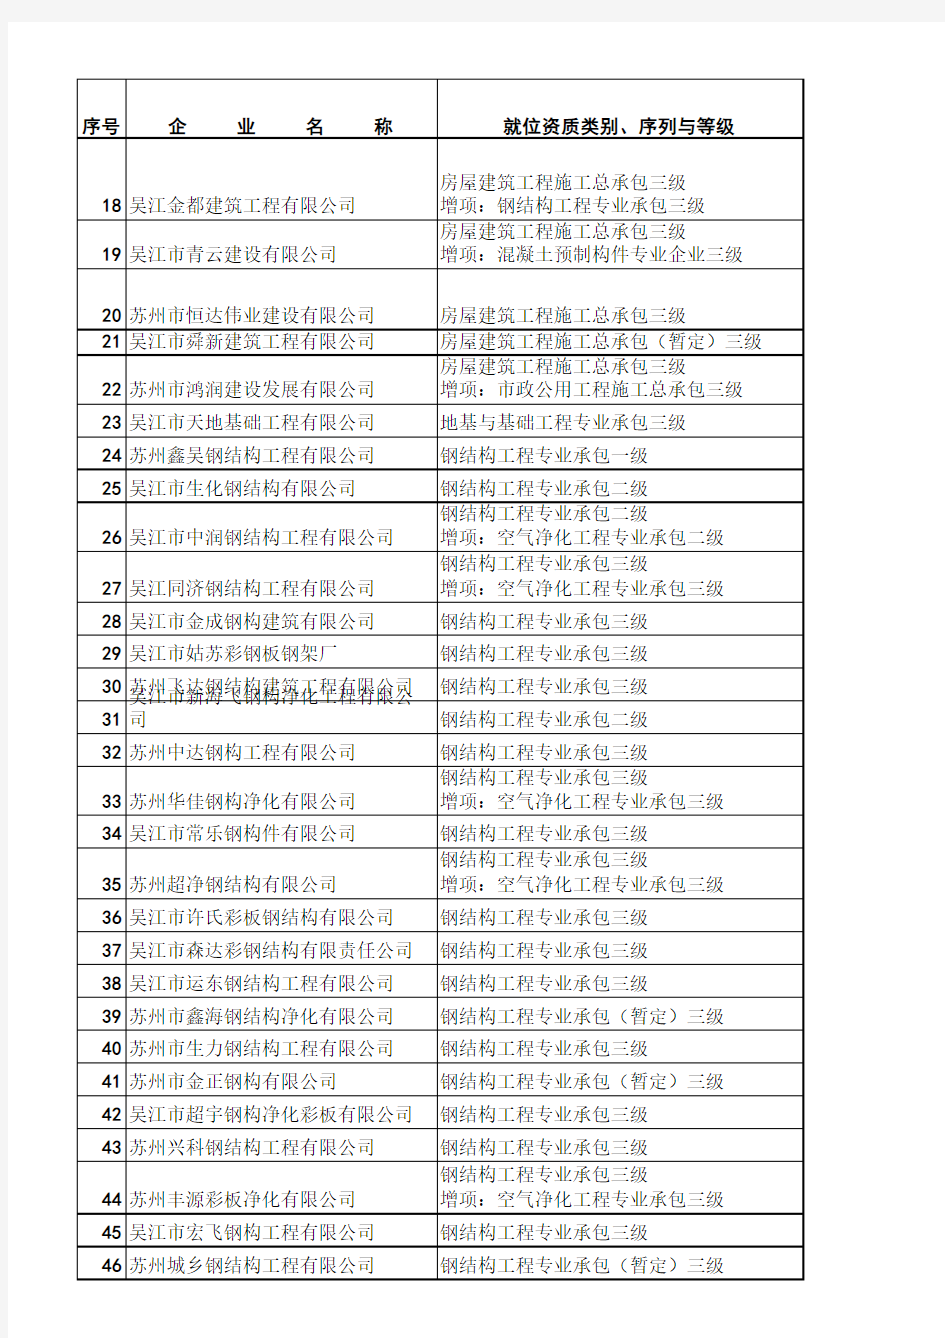 吴江市有资质建筑业企业名单